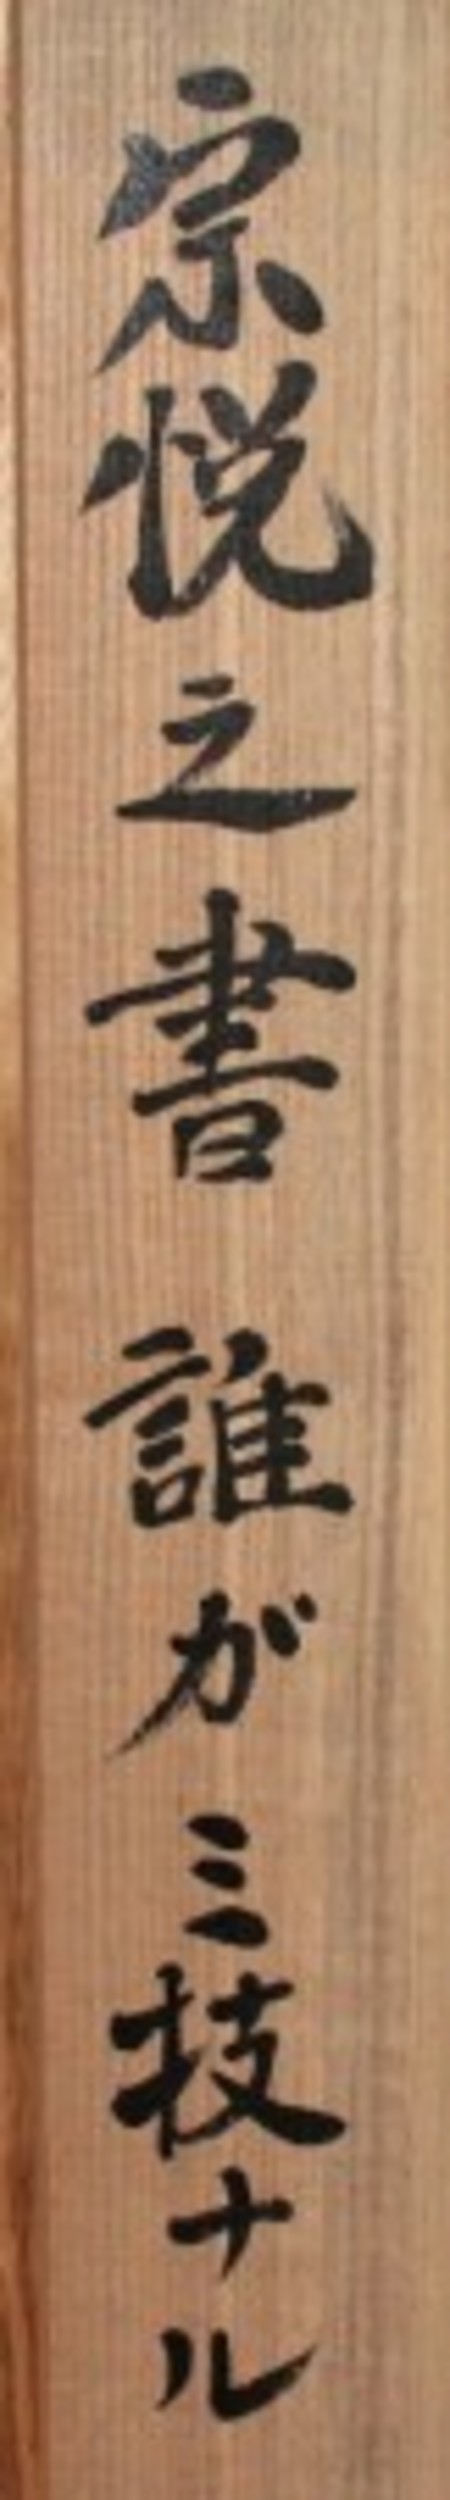 22432 　柳宗悦　(「誰が　み技なる　川の綾帯」(宗理識))　YANAGI　Muneyoshi